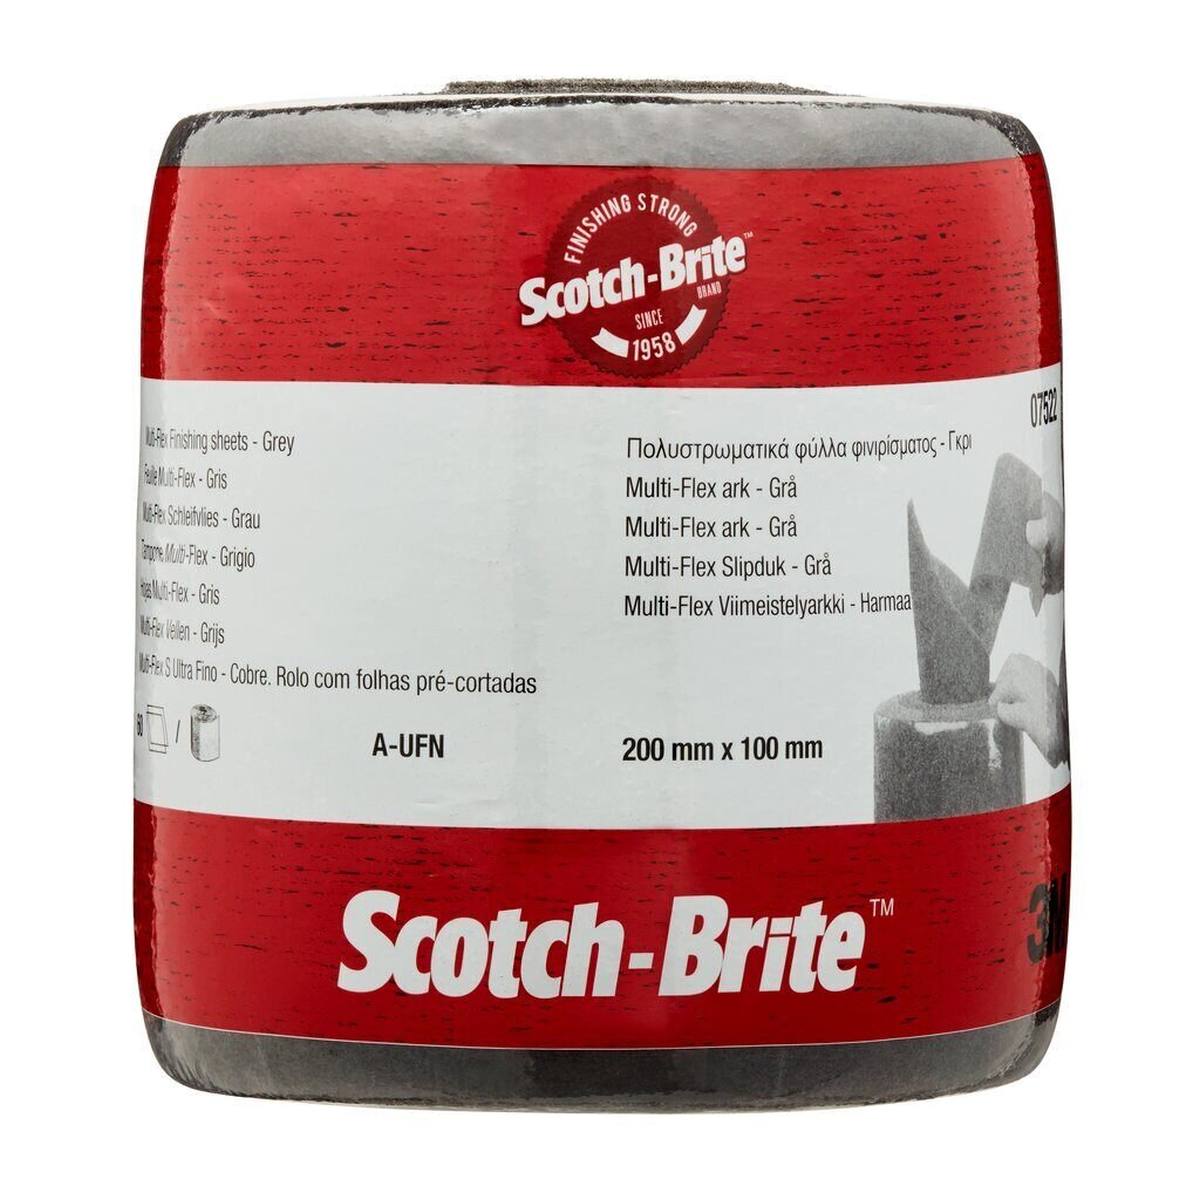 3M Scotch-Brite Rouleau non tissé Multi-Flex MX-SR, gris, 100 mm x 200 mm, A, ultra fin, perforé 60 fois #07522